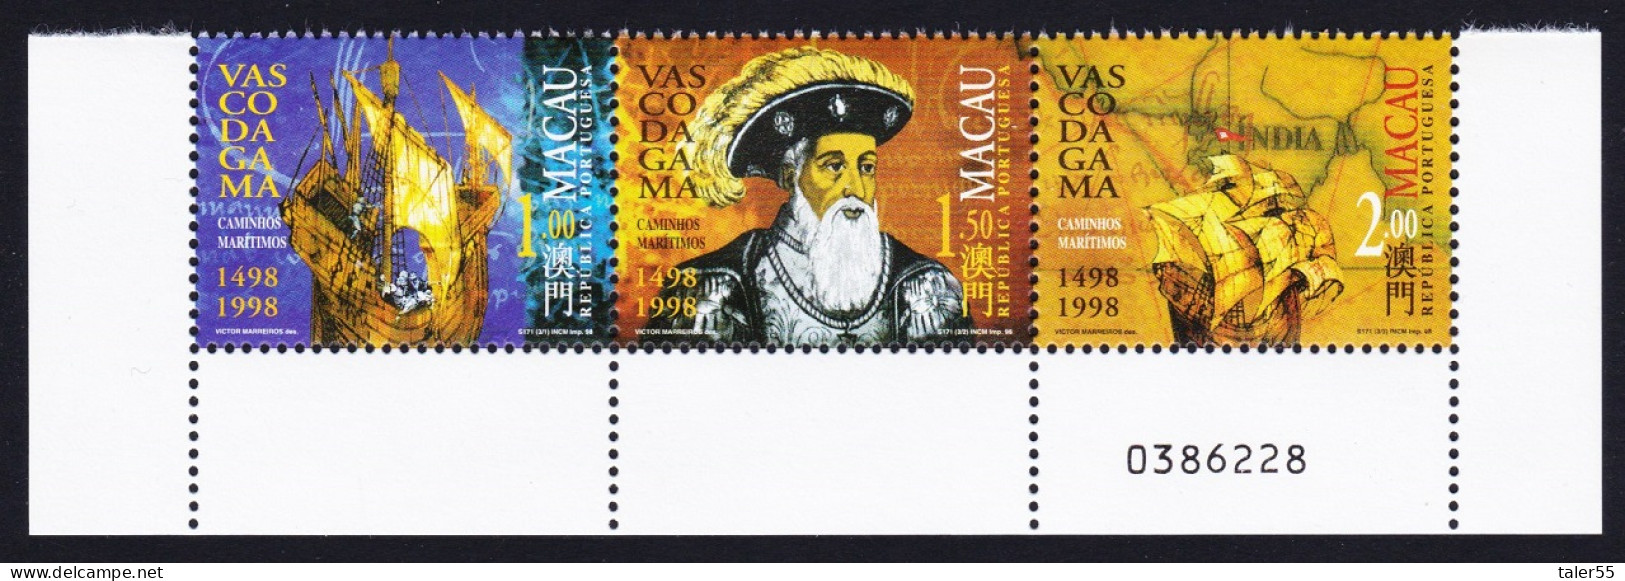 Macao Macau Vasco Da Gama 1498 Strip Of 3v Control Number 1998 MNH SG#1044-1046 Sc#943-946 - Nuovi